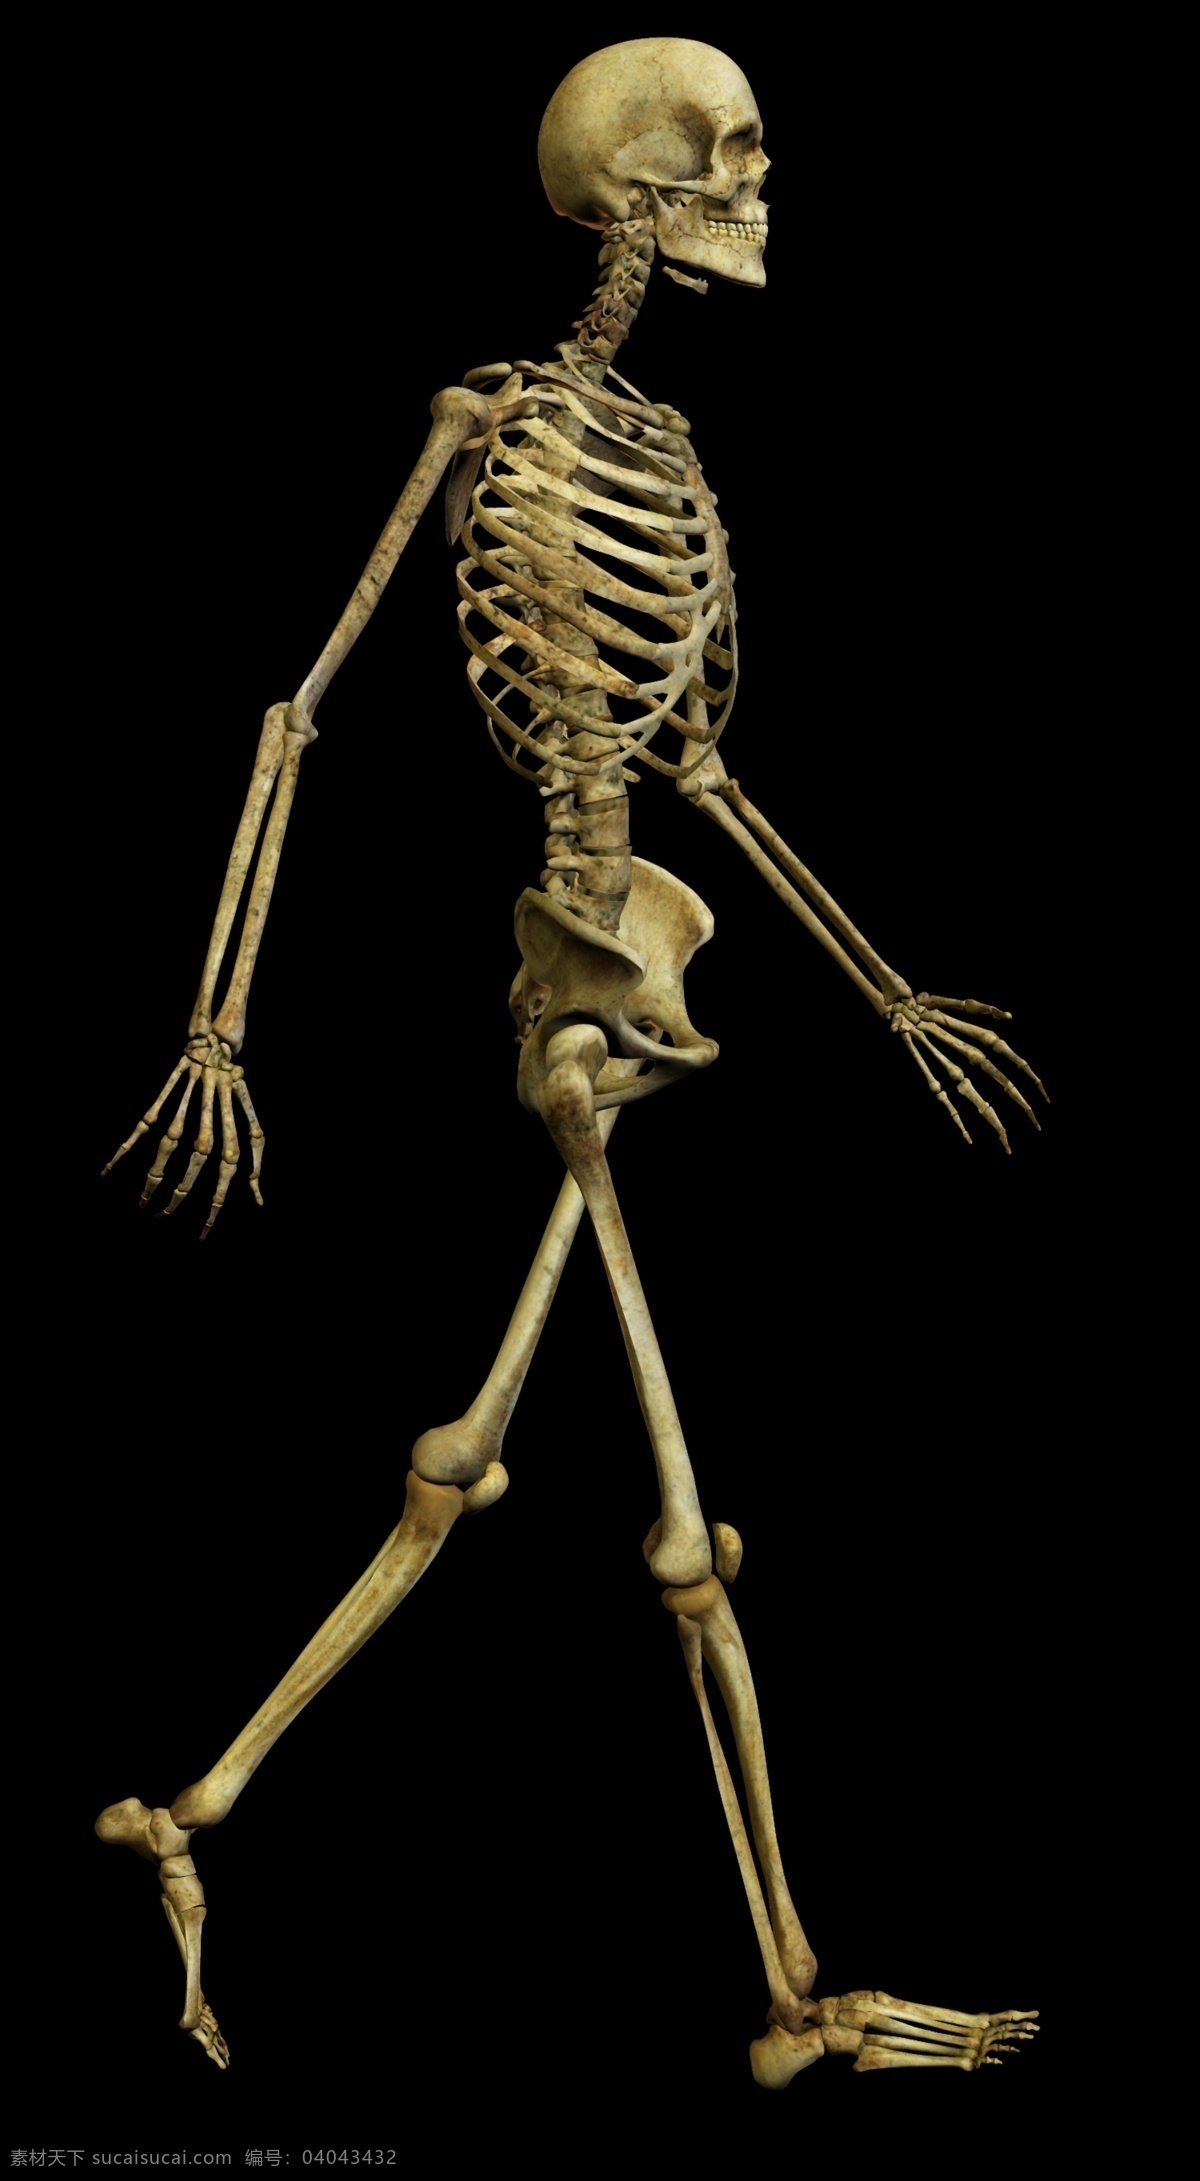 骷髅人 人体 骨骼 结构图 骨架 骷髅图片 骨架图片 骷髅素材 步行中的骷髅 psd源文件